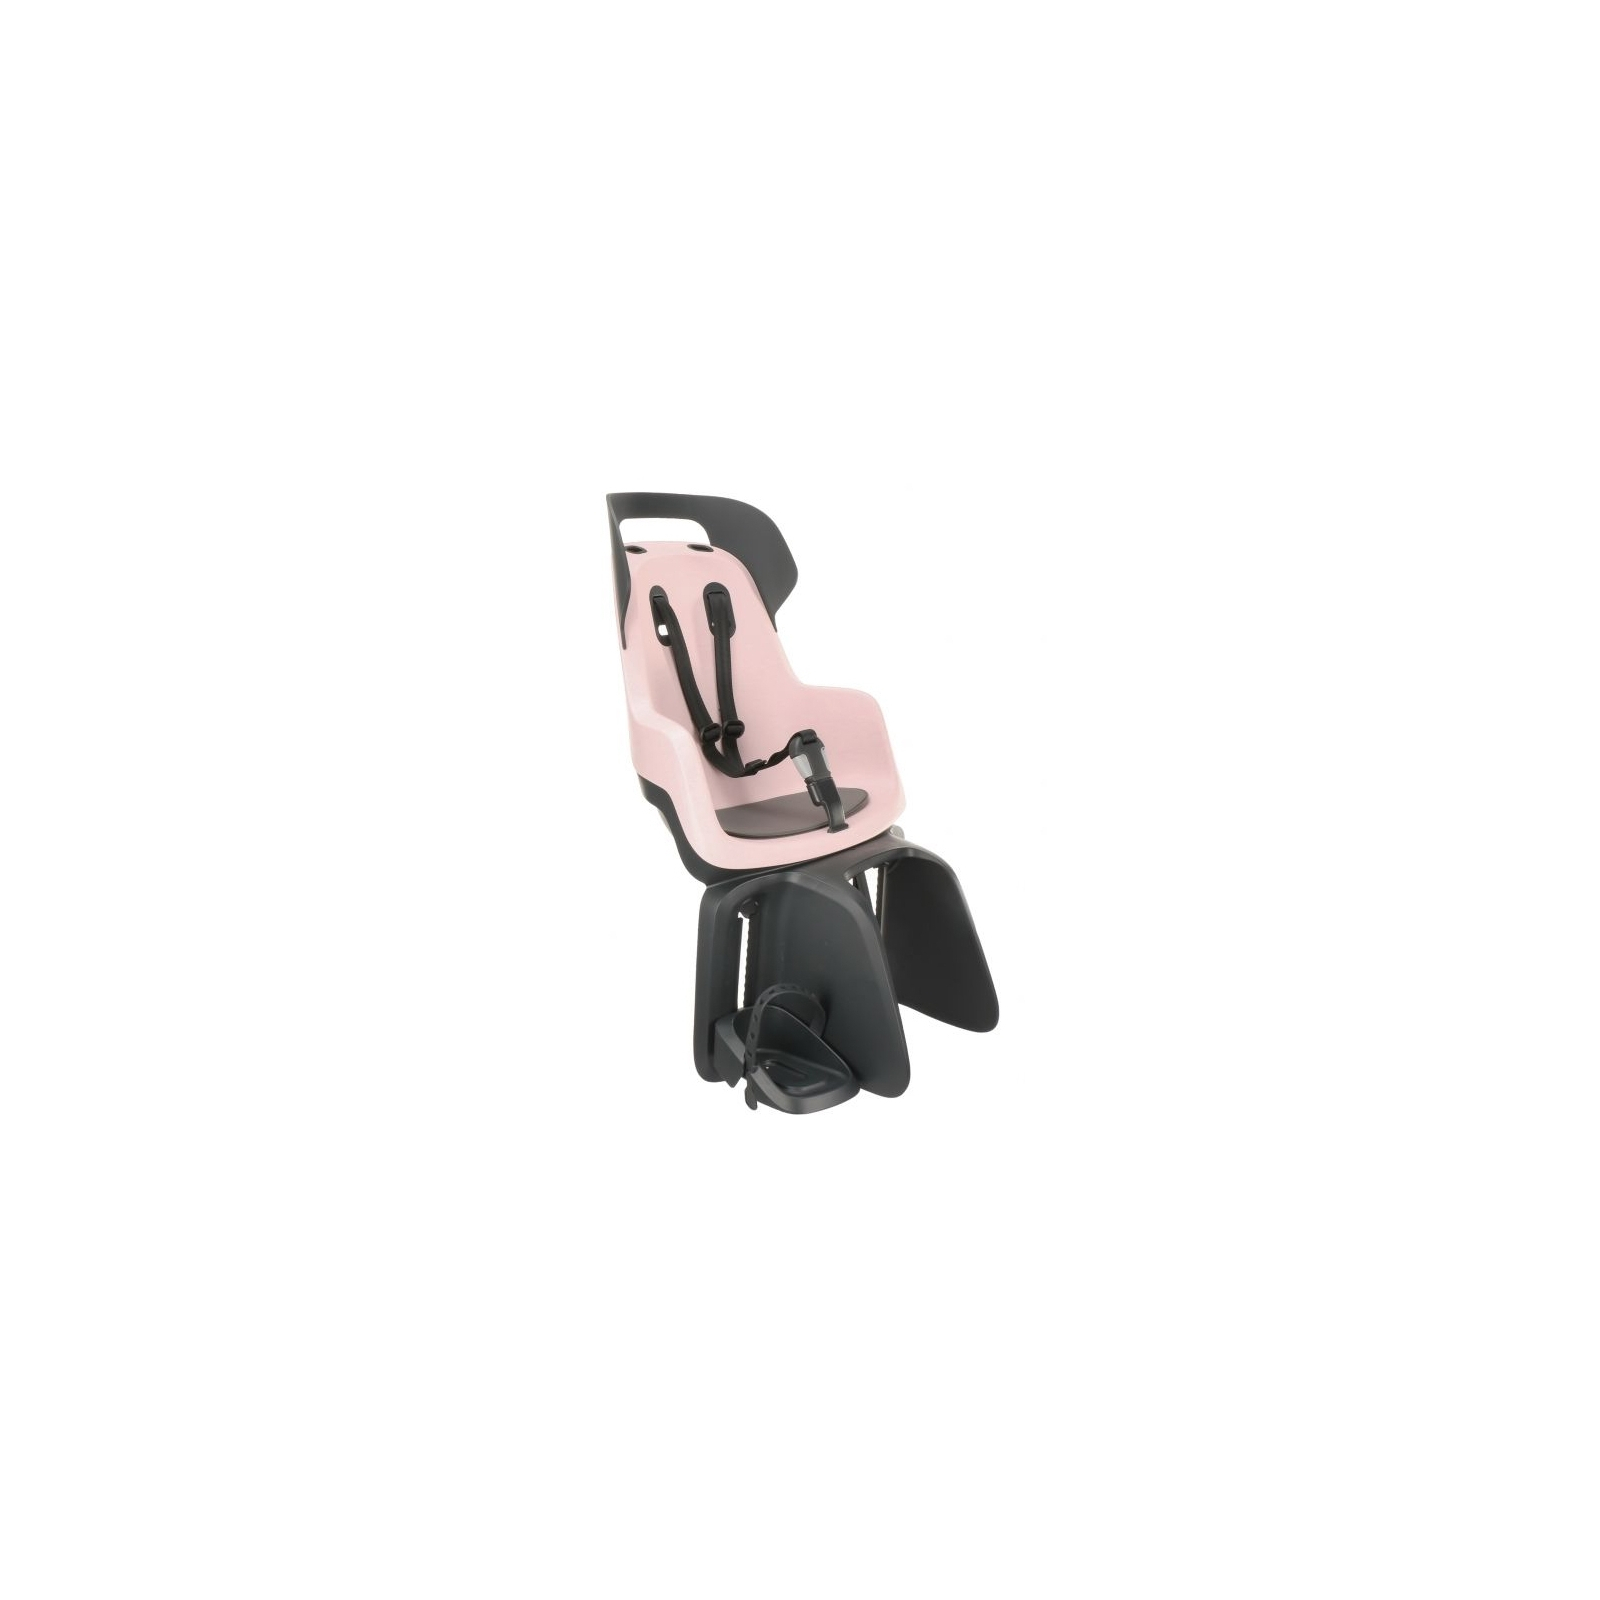 Детское велокресло Bobike Maxi GO Carrier Cotton candy pink (8012300004) изображение 3